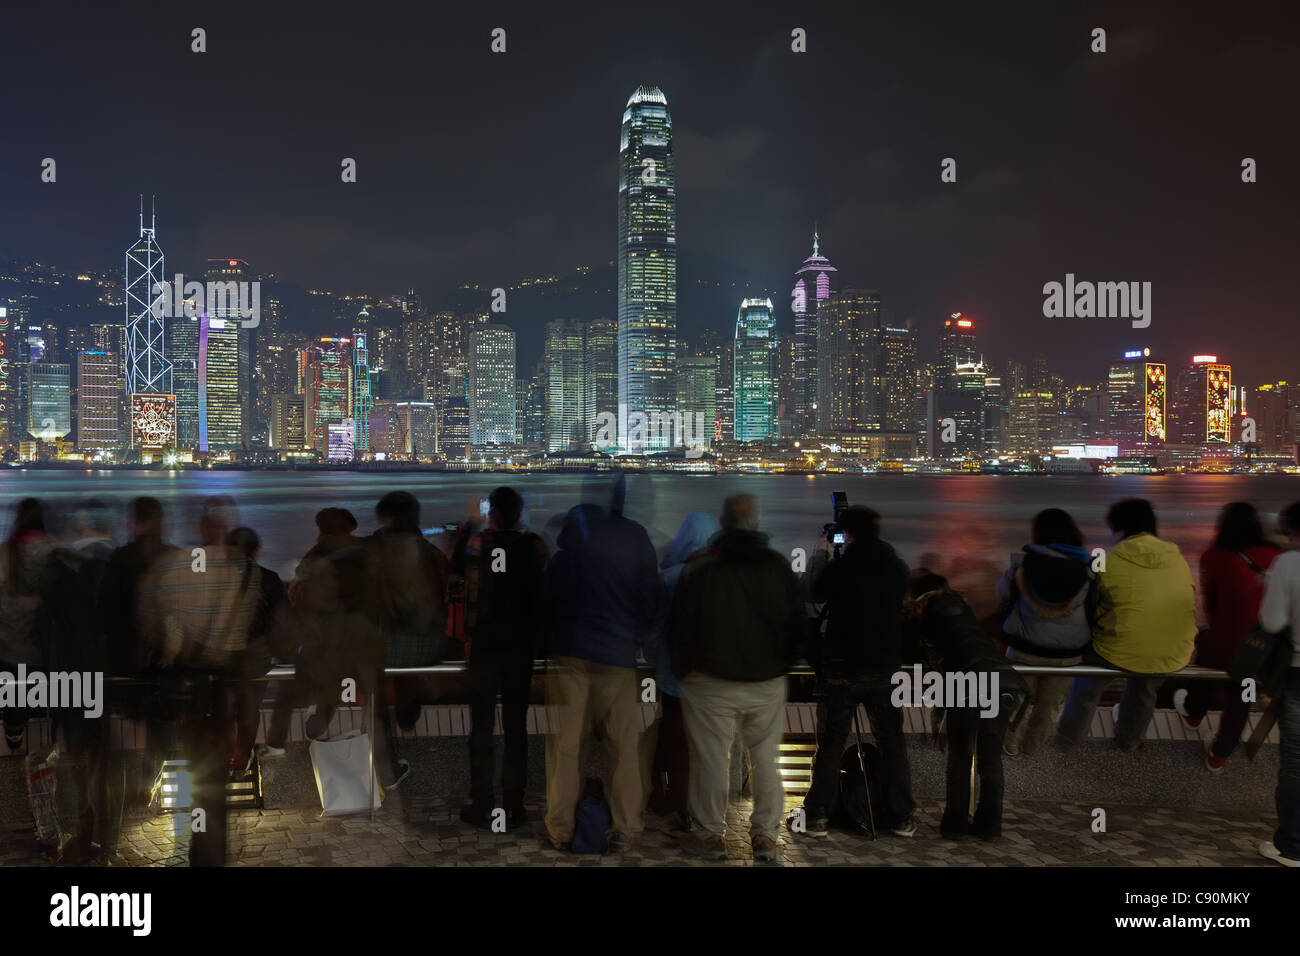 Hong Kong Skyline by night, tourists at Kowloon Public Pier, Kowloon, Hong Kong, China Stock Photo